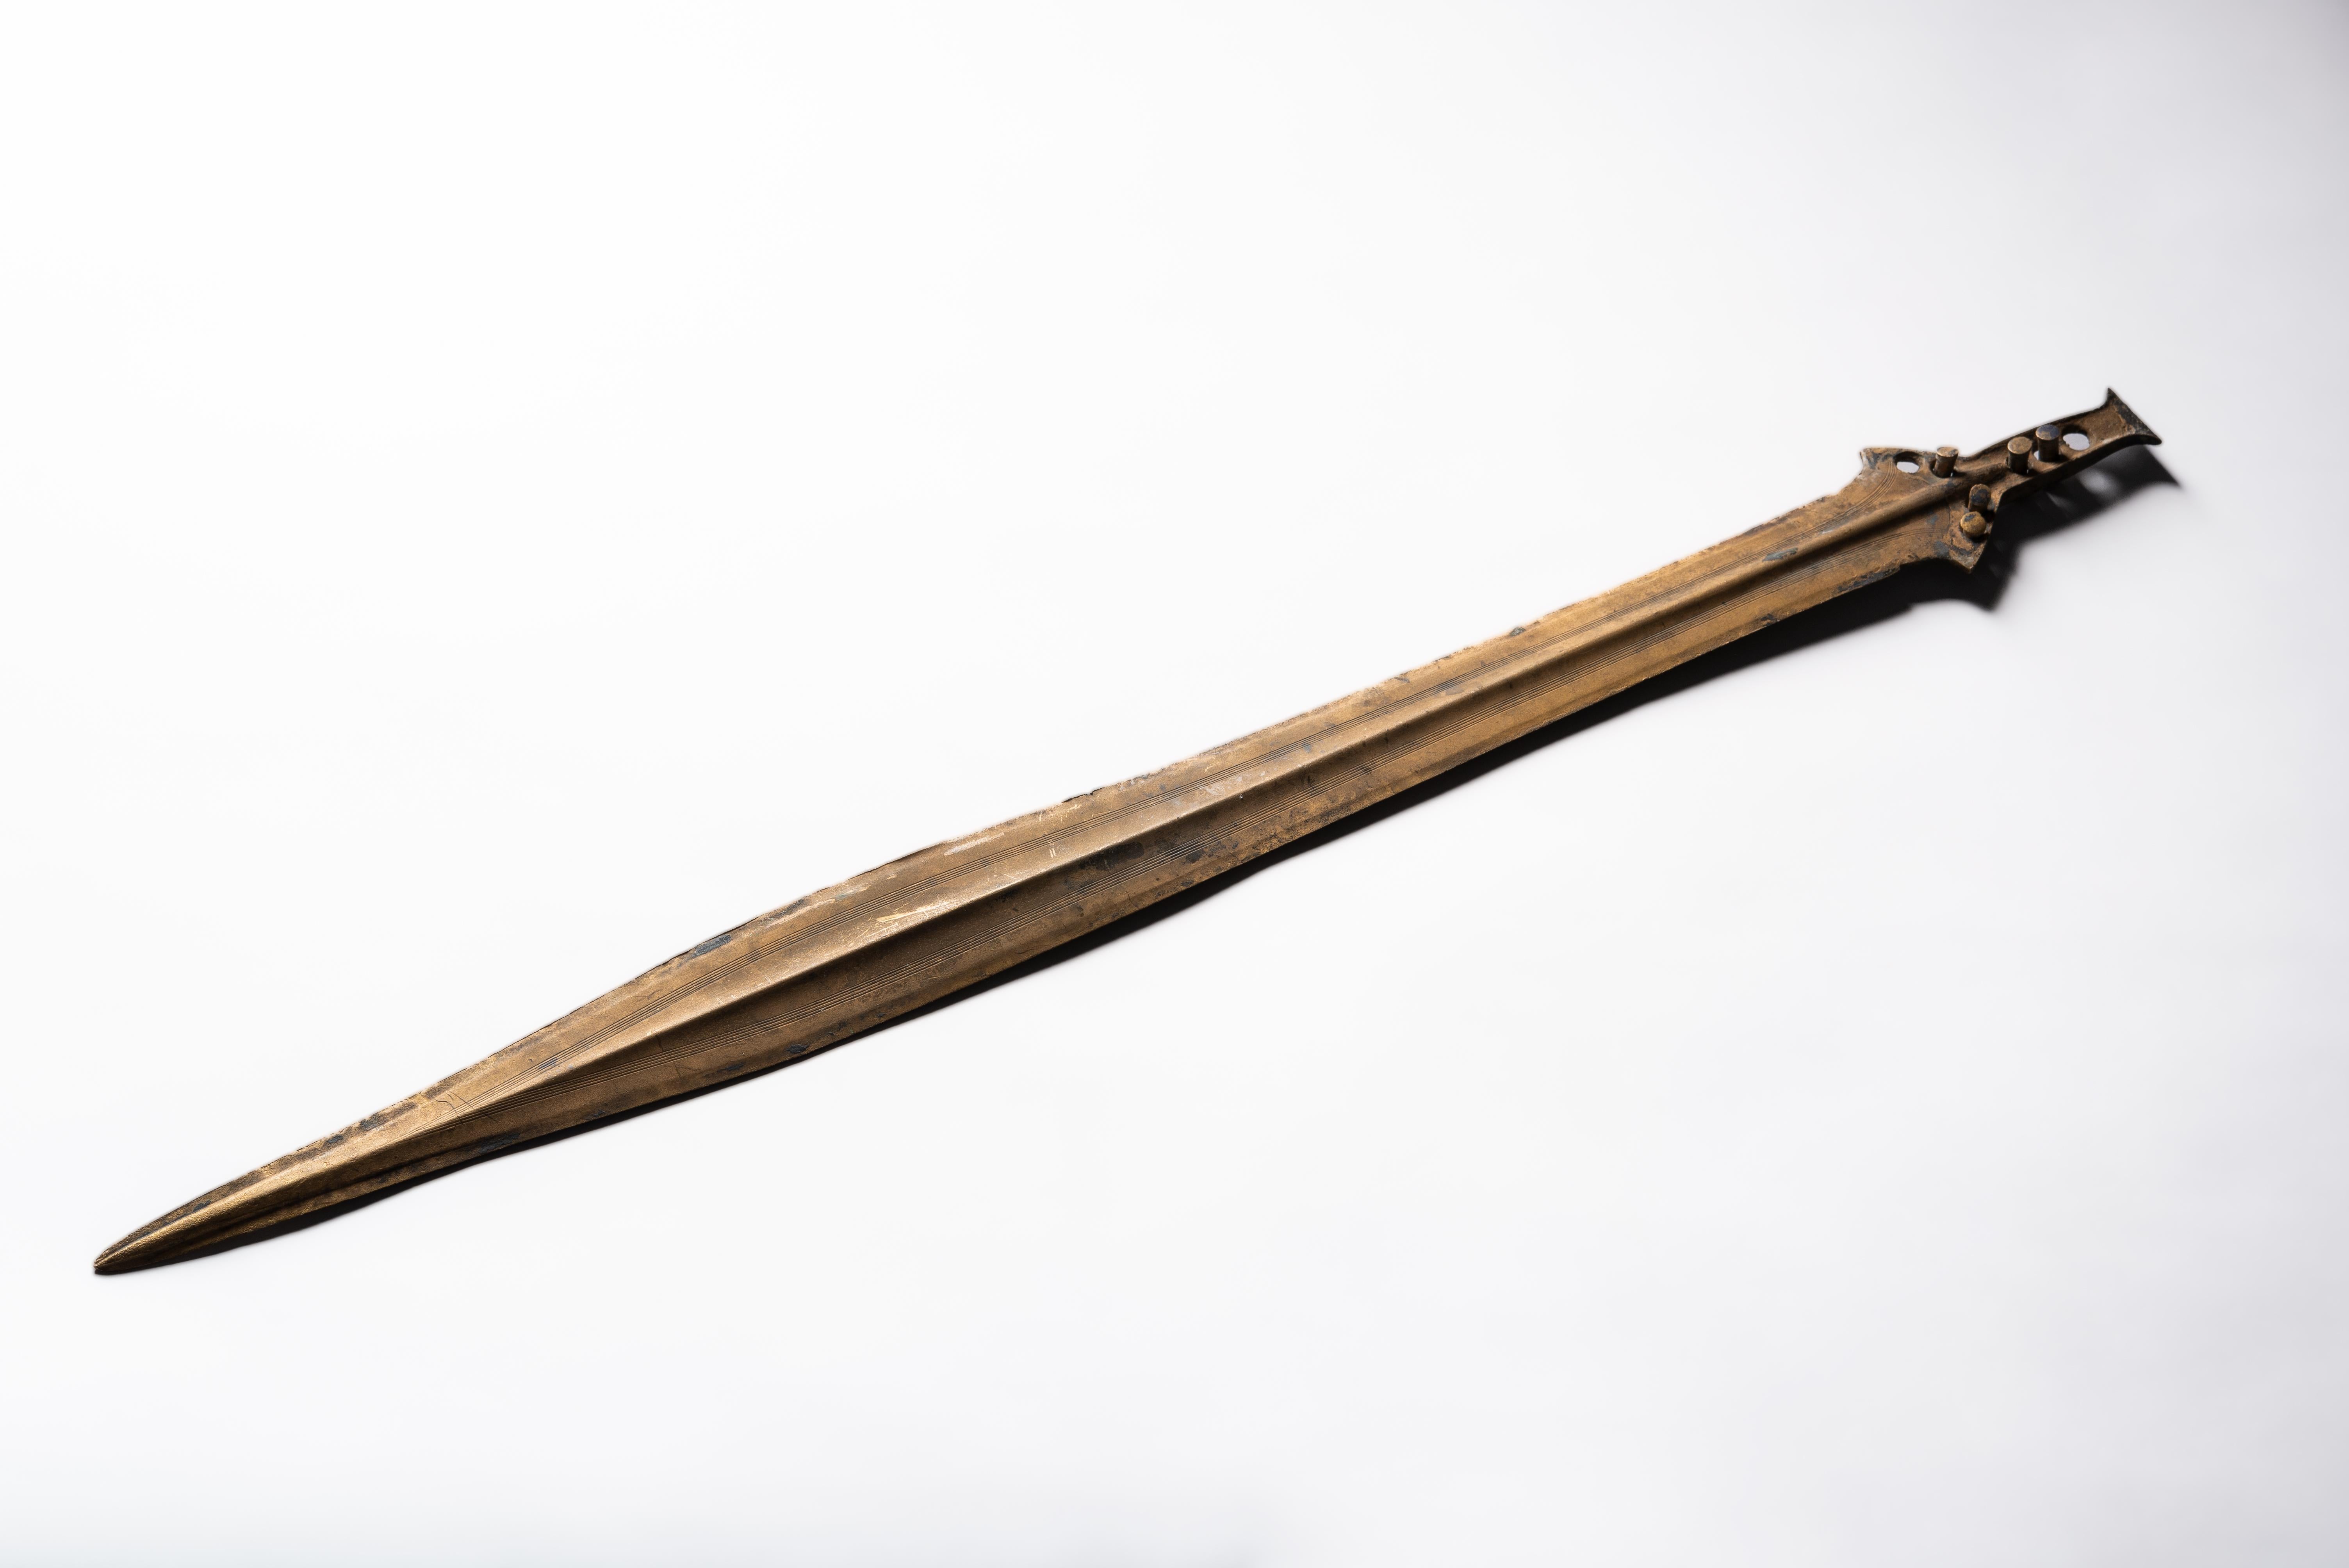 Épée de Saint Nazaire, fin de l'âge du bronze, vers 800-900 C.C.

Une épée de l'âge du bronze exceptionnellement bien conservée, avec d'élégantes décorations finement incisées, une forme presque parfaite et une merveilleuse patine dorée.